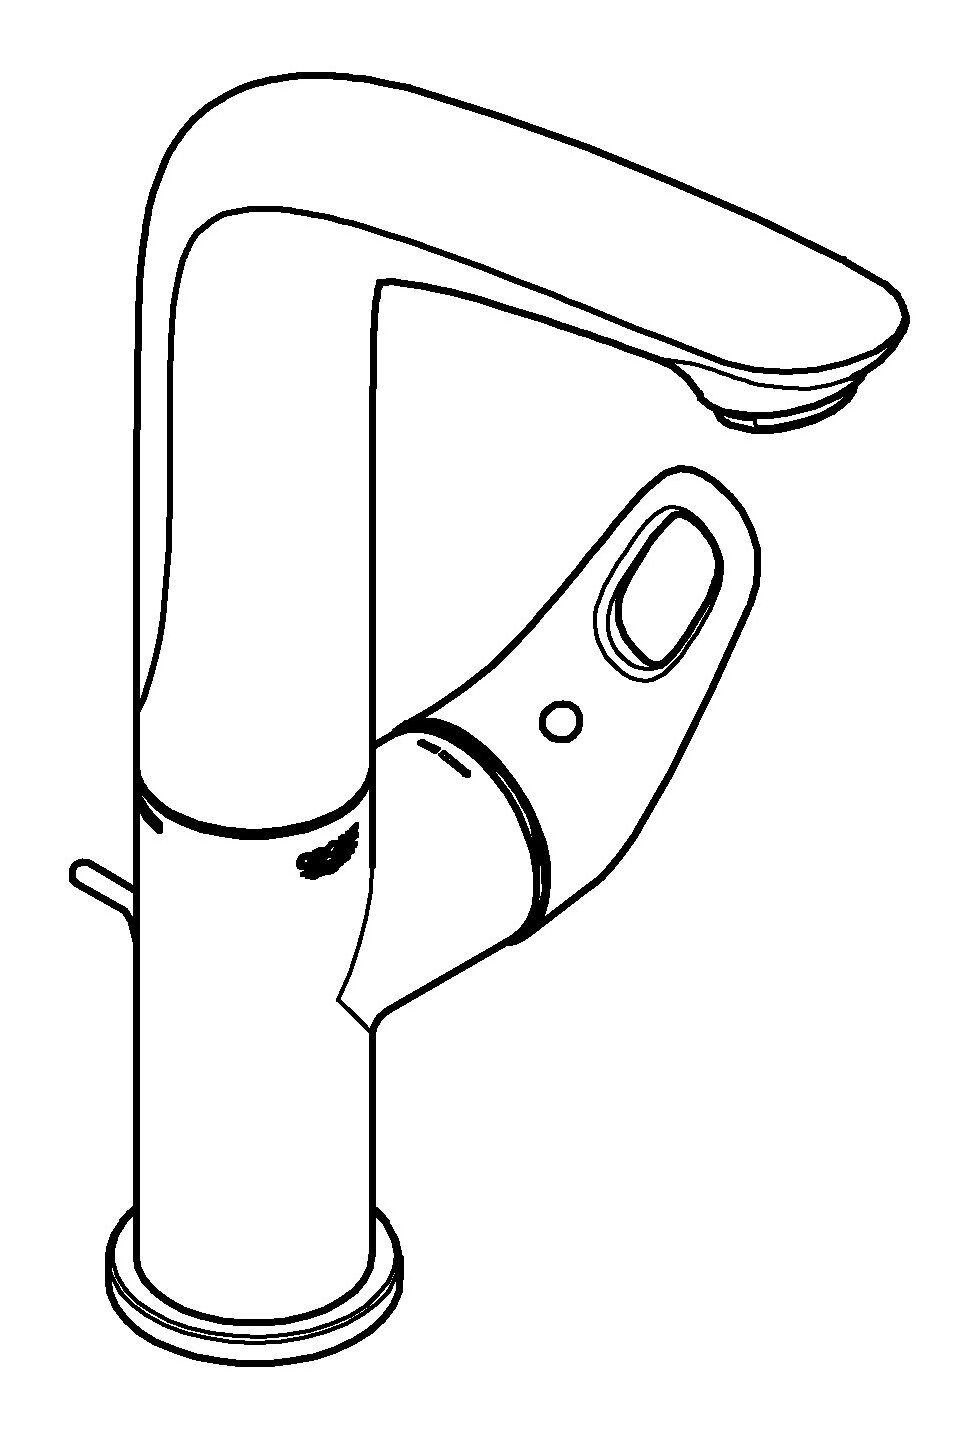 Einhand L-Size Zugstangen-Ablaufgarnitur Grohe offener Chrom Waschtischarmatur - mit Eurostyle Hebel